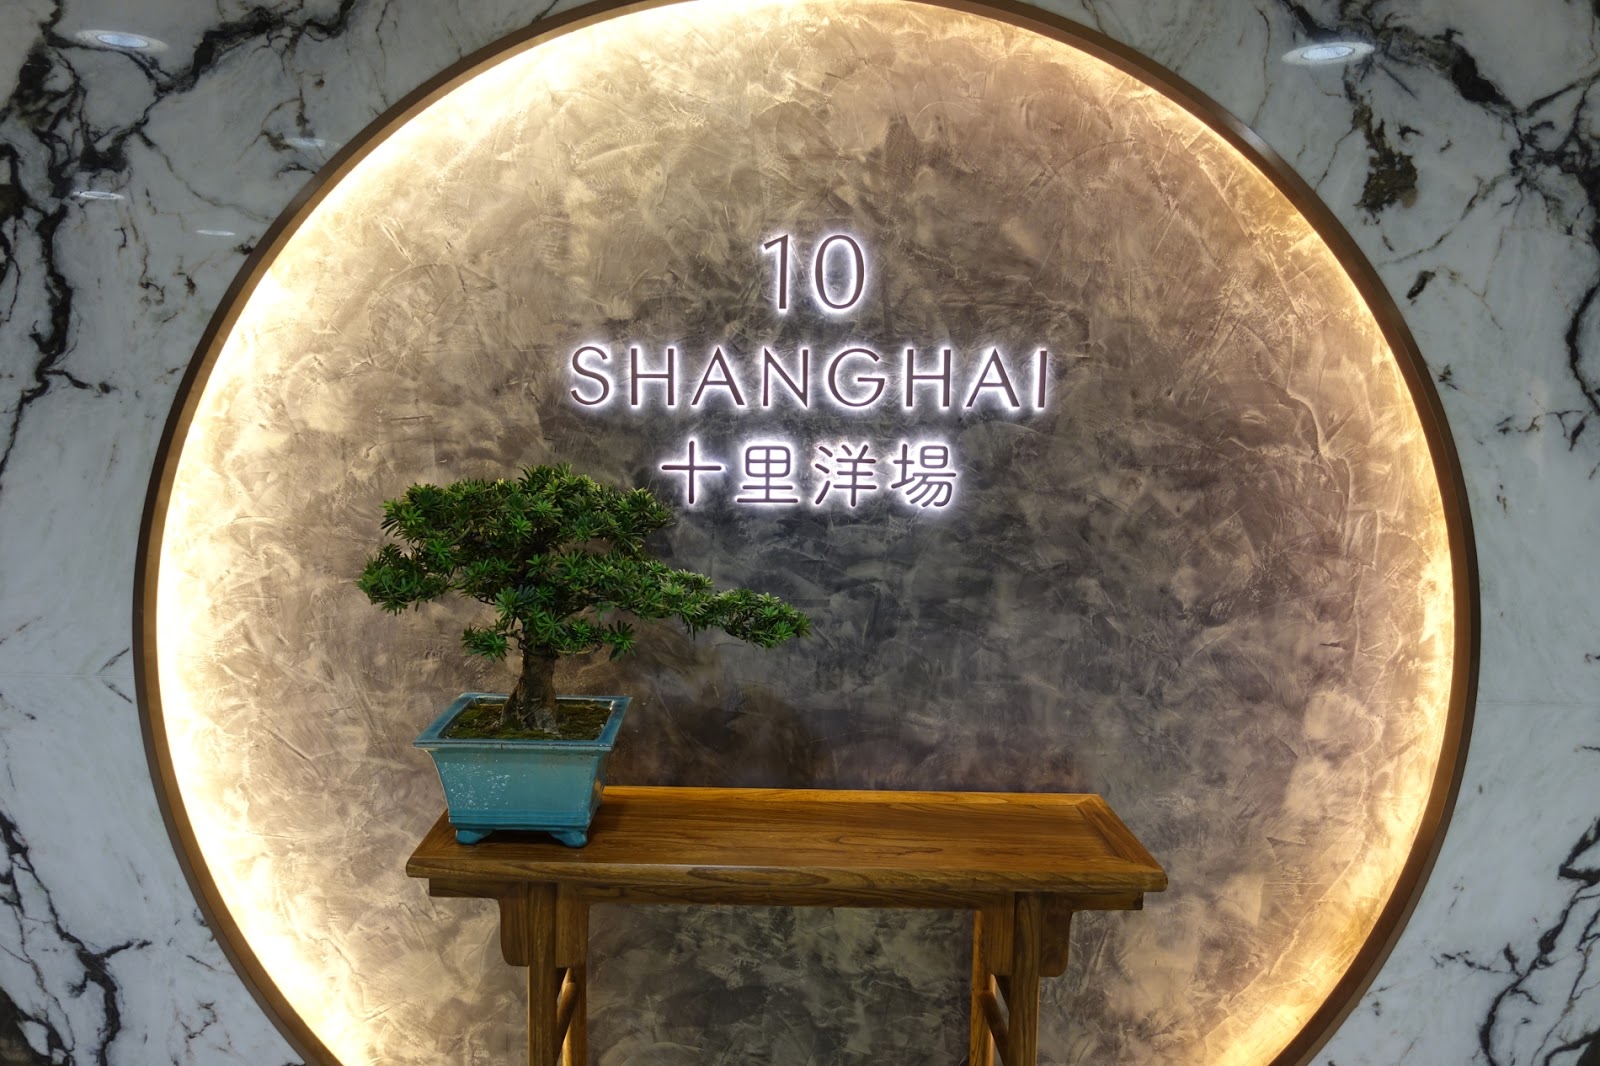 New Shanghainese Restaurant | Joie de Vivre - Blog by g4gary